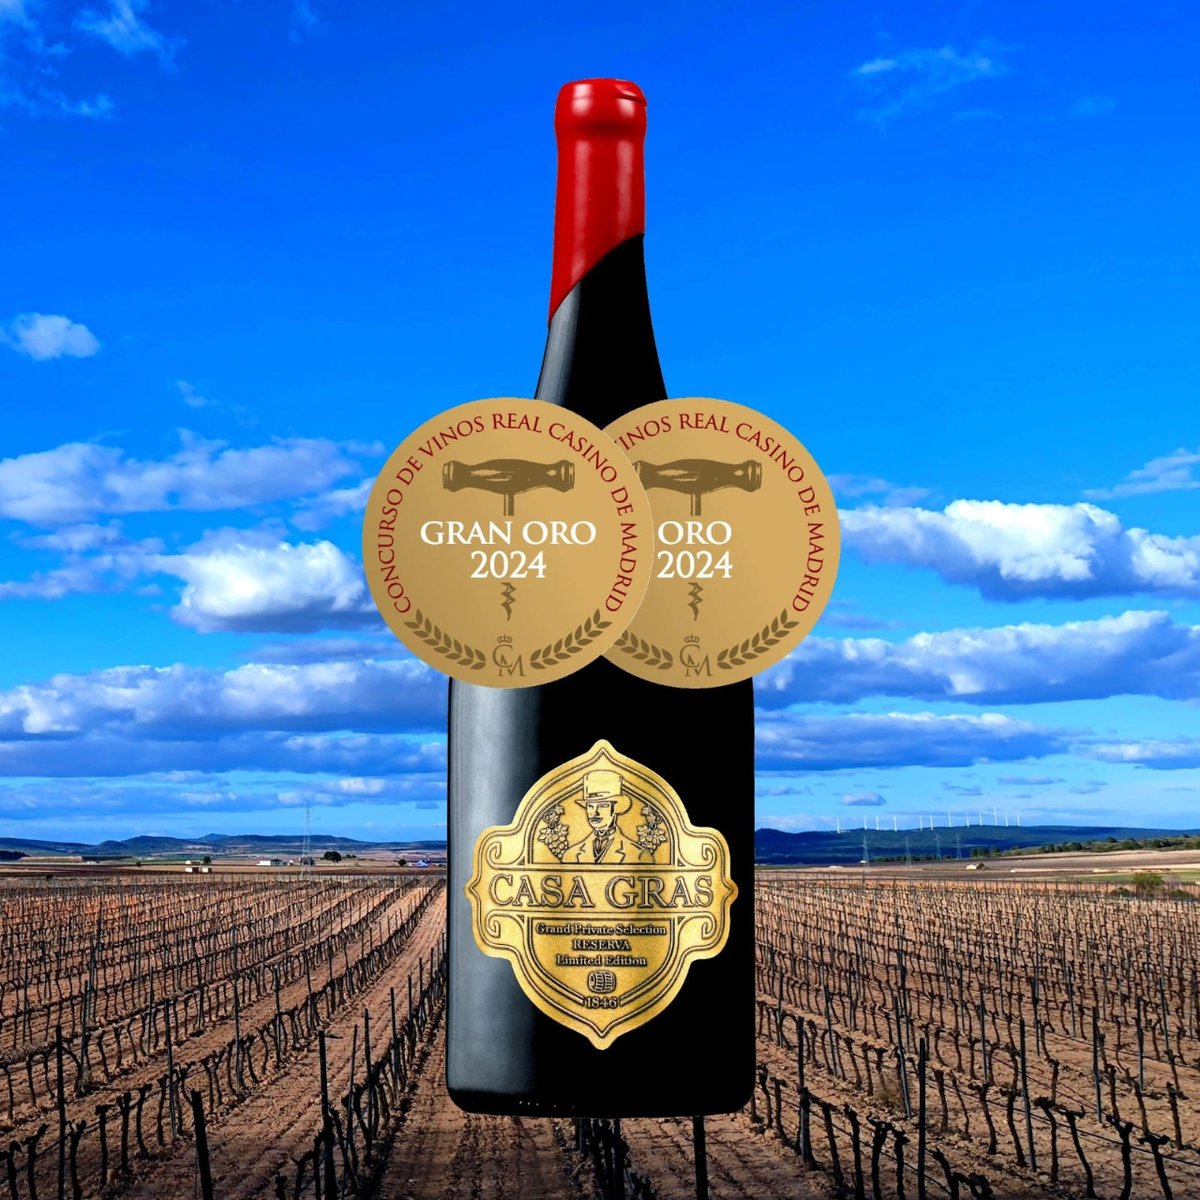 Nuestros vinos #DOPYecla siguen recibiendo premios. Esta vez Casa de las Especias recibe las medallas Gran Oro y Oro del Concurso de Vinos Real Casino de Madrid. Los vinos premiados son Reserva de 2016 y 2018. ¡Muchas felicidades!